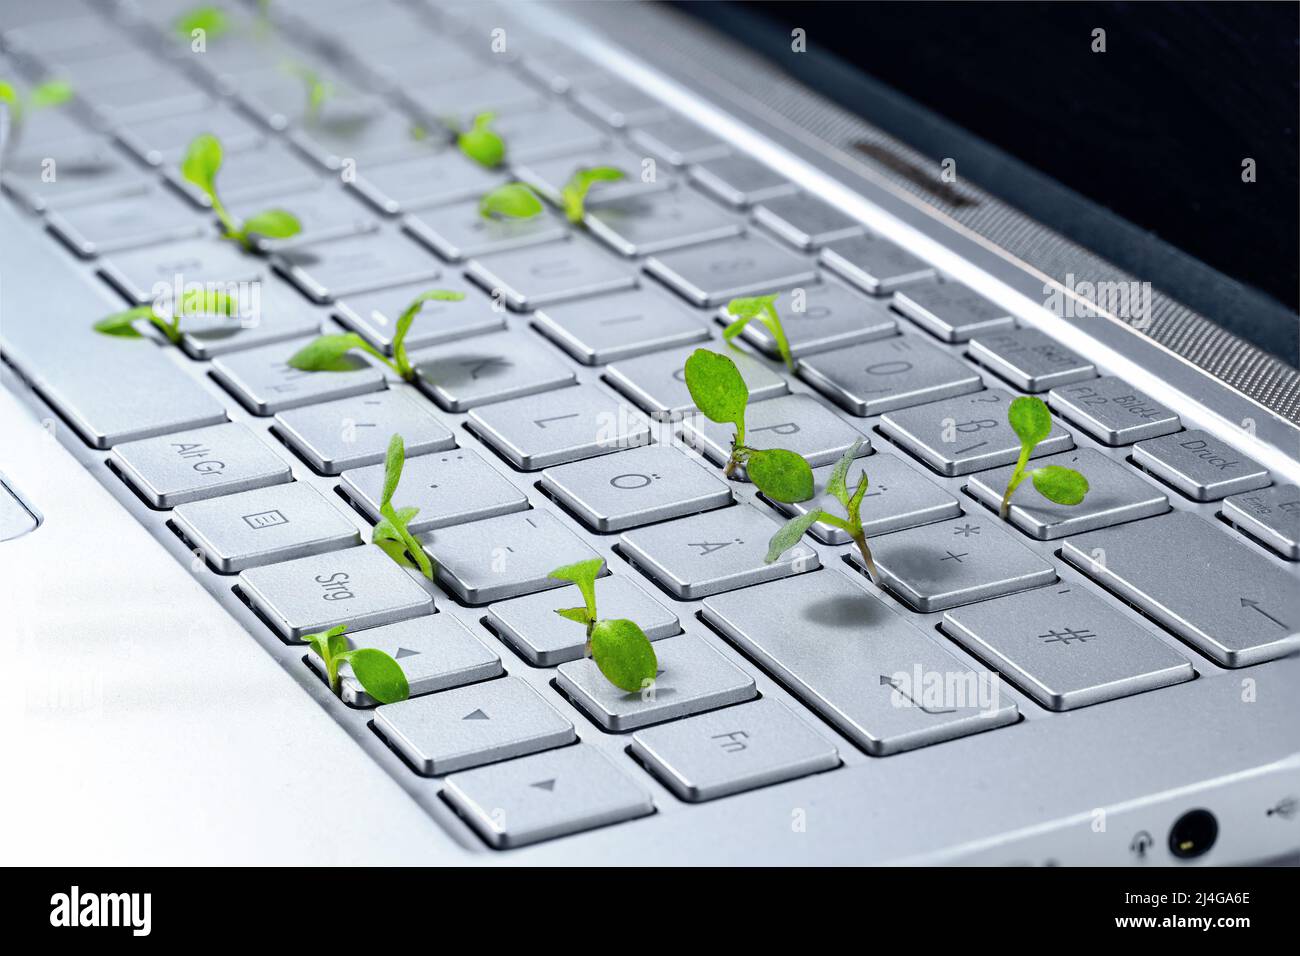 Sämlinge, die in einer Laptop-Tastatur wachsen, Symbol für grünes Geschäft, umweltfreundliche und nachhaltige Wirtschaft, Kopierraum, ausgewählter Fokus, geringe Tiefe von f Stockfoto